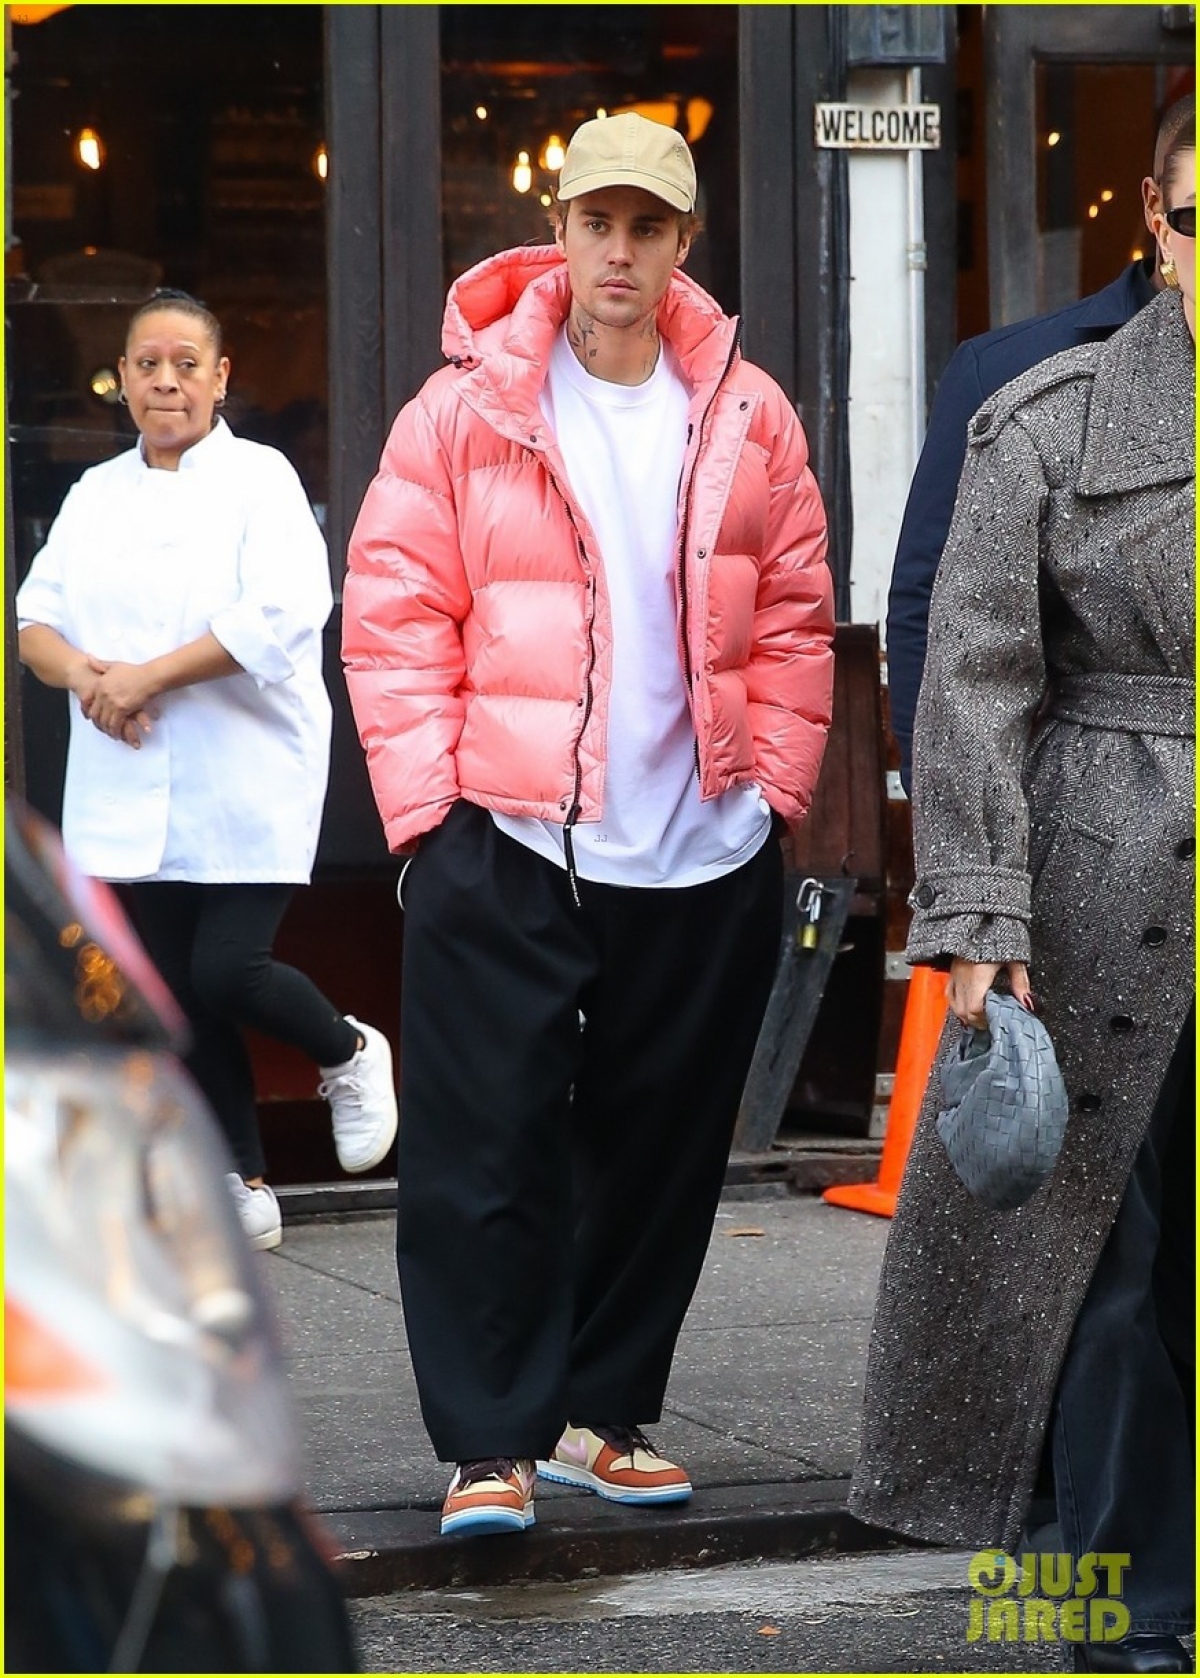 Justin Bieber diện áo hồng nổi bật, vui vẻ đi chơi cùng bà xã Hailey Baldwin - Ảnh 5.